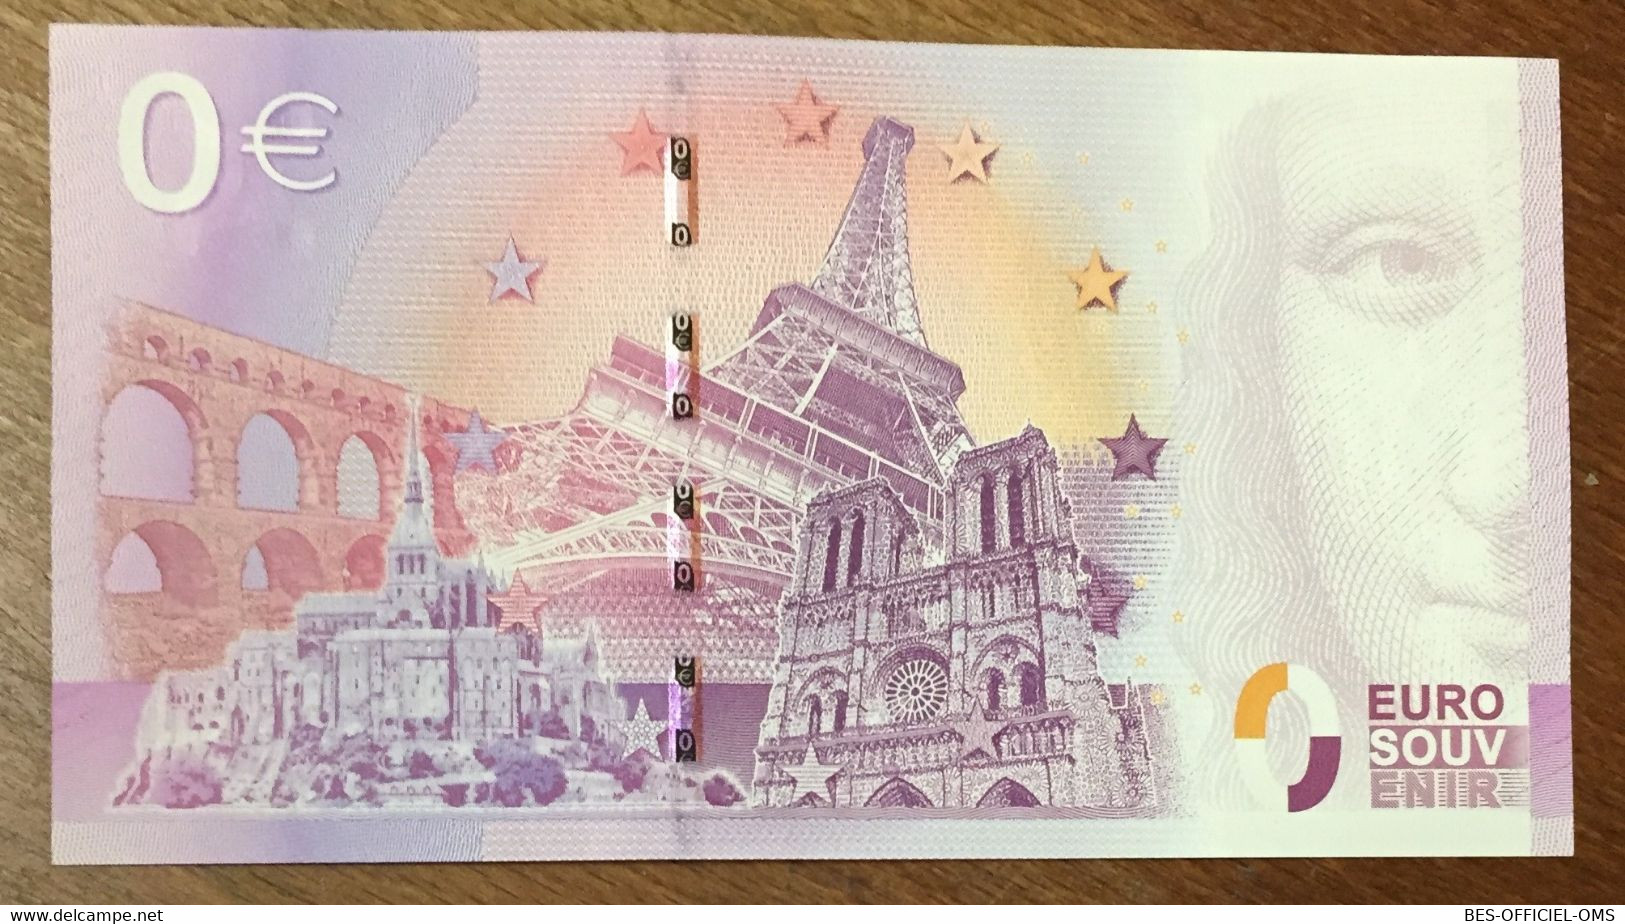 2015 BILLET 0 EURO SOUVENIR DPT 60 CHÂTEAU DE CHANTILLY ZERO 0 EURO SCHEIN BANKNOTE PAPER MONEY - Private Proofs / Unofficial